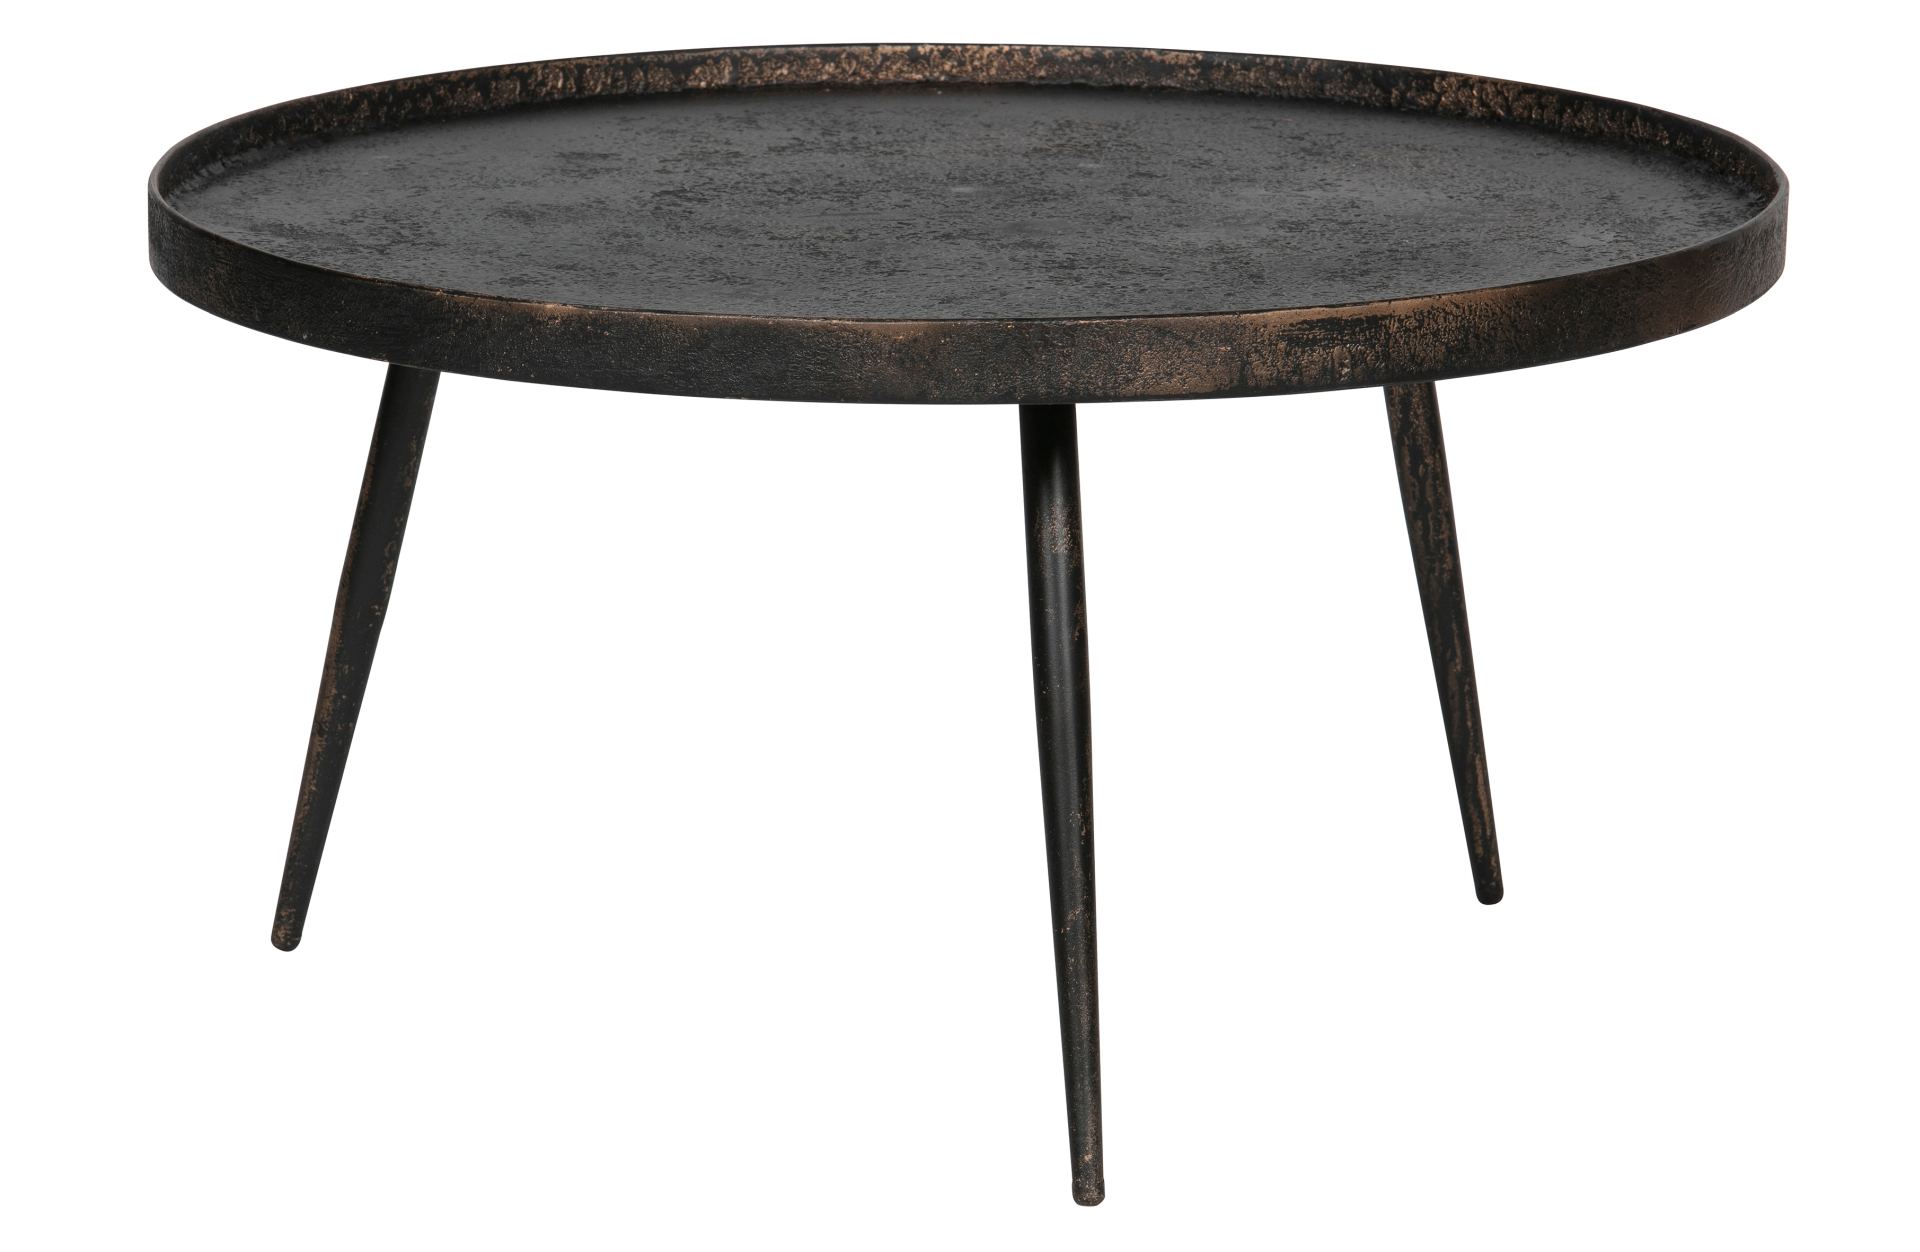 Der Beistelltisch Bounds überzeugt mit seinem industriellem Design. Gefertigt wurde der Tisch aus Metall und Holz. Der Tisch besitzt einen Anthrazit Farbton